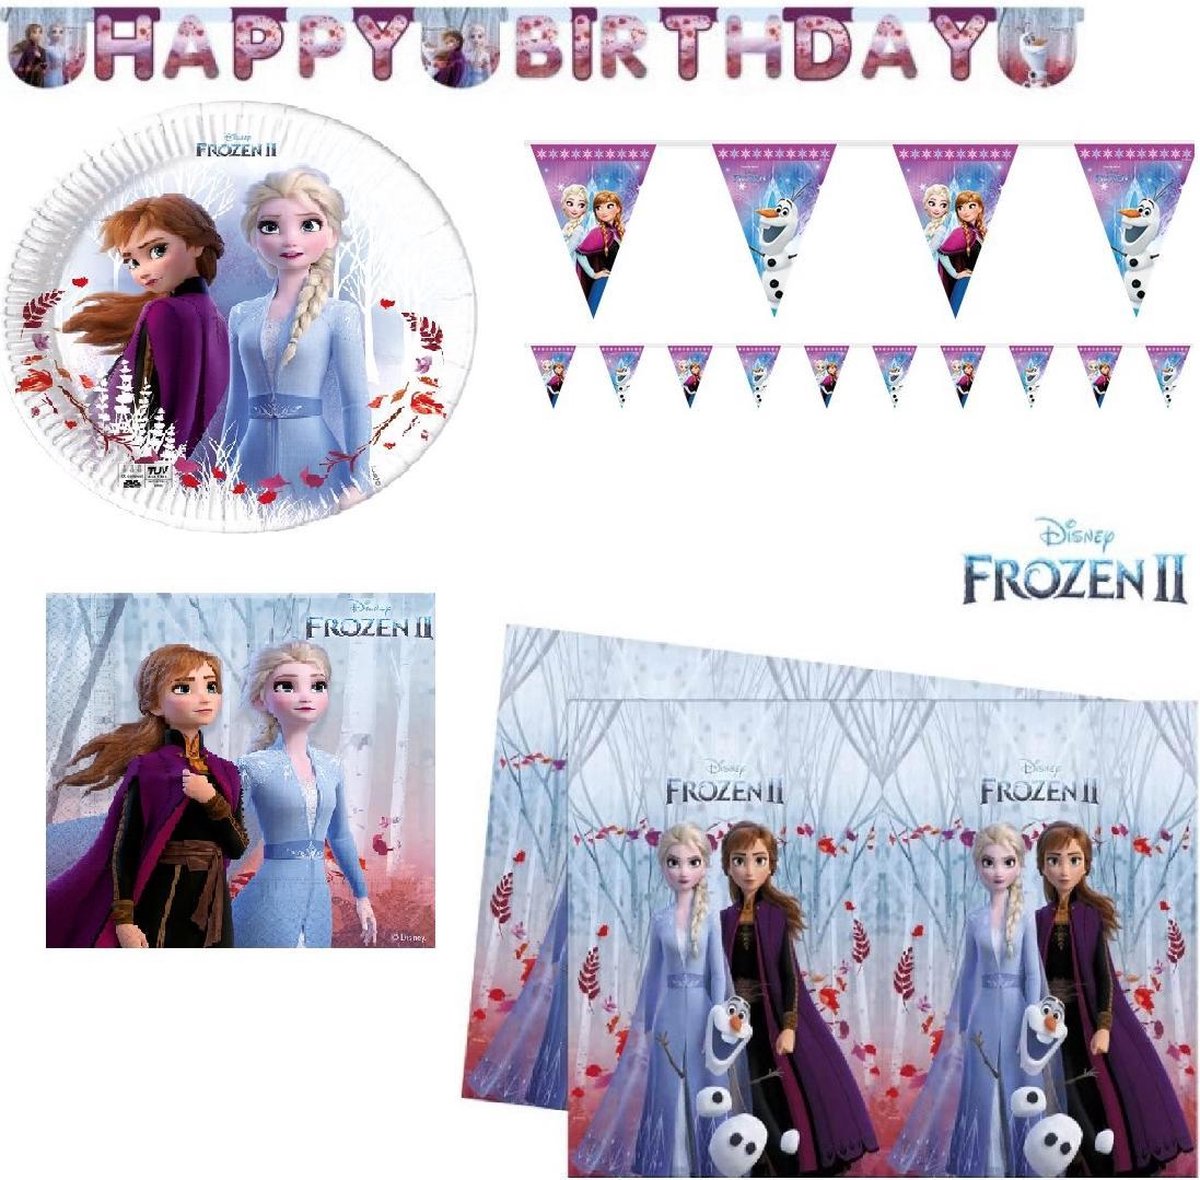 Frozen kinderfeestje - borden / servetten / 2 soorten slingers / tafelkleed - Disney Frozen 2 - feestpakket